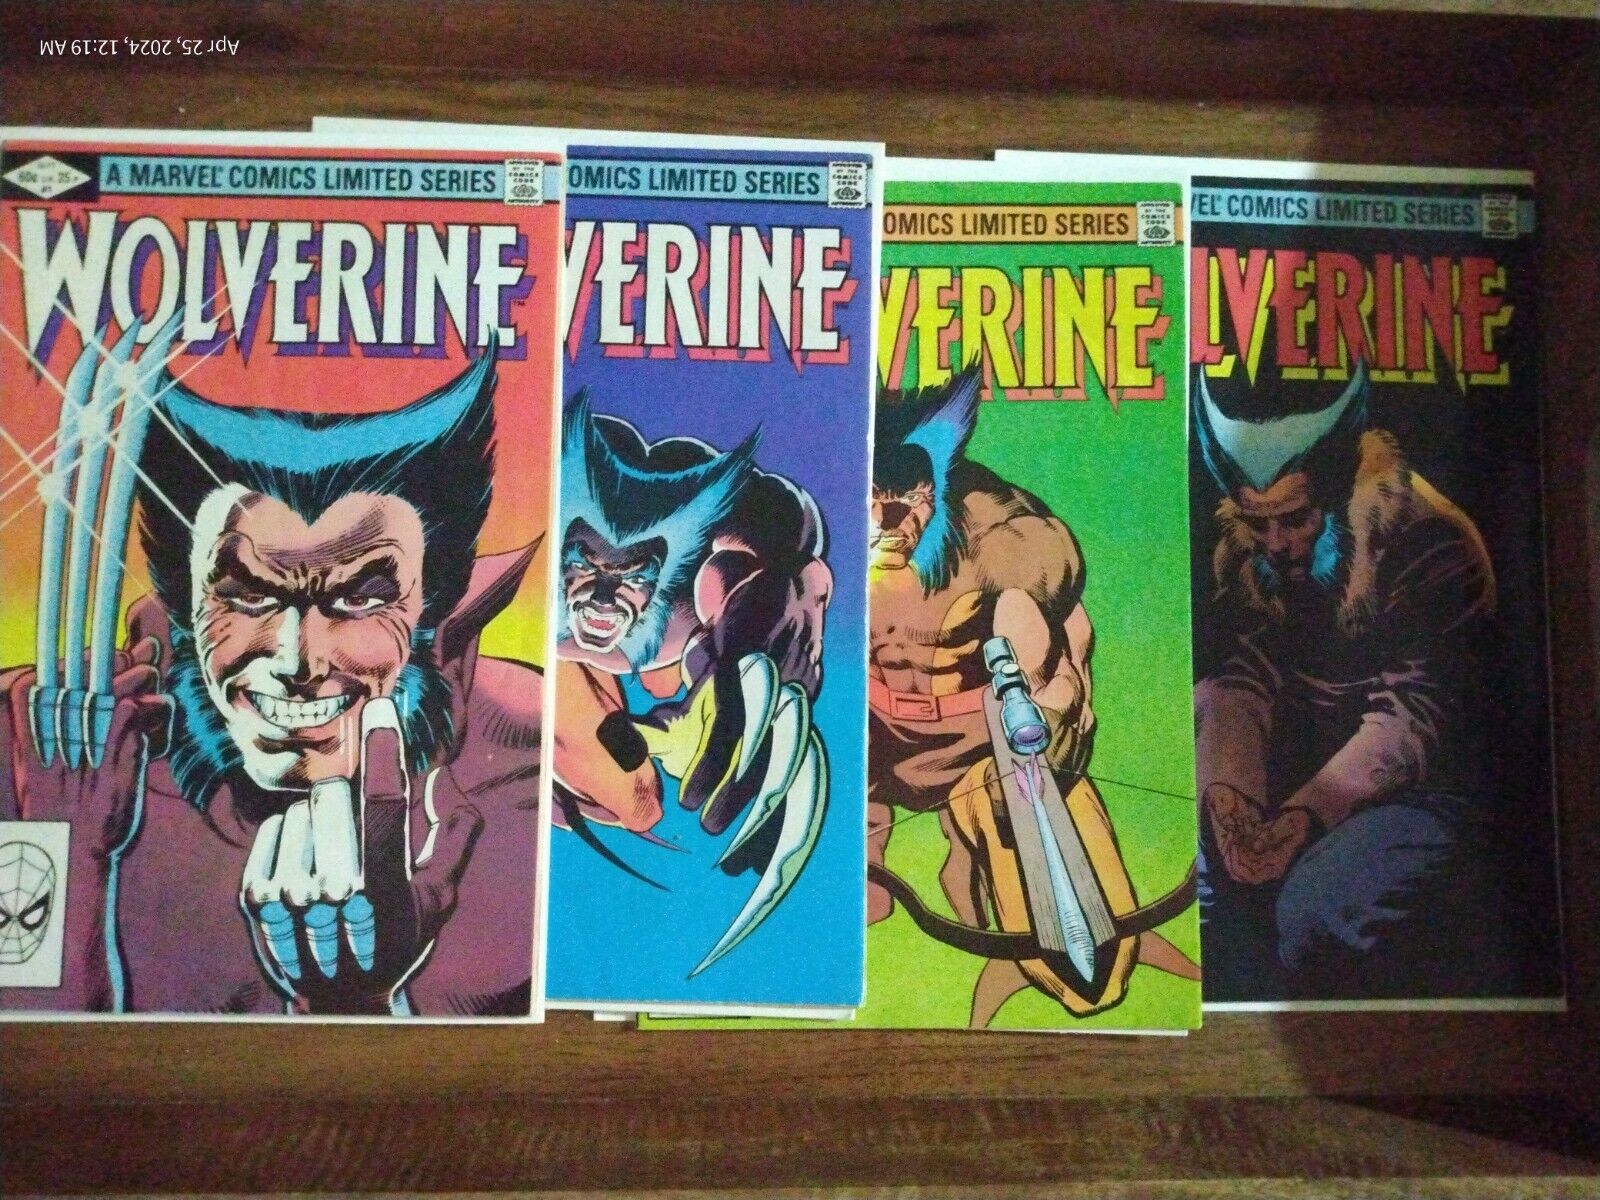 Marvel Comics Wolverine 1982 Limited Series Complete Set #1 - 4 Claremont/Miller